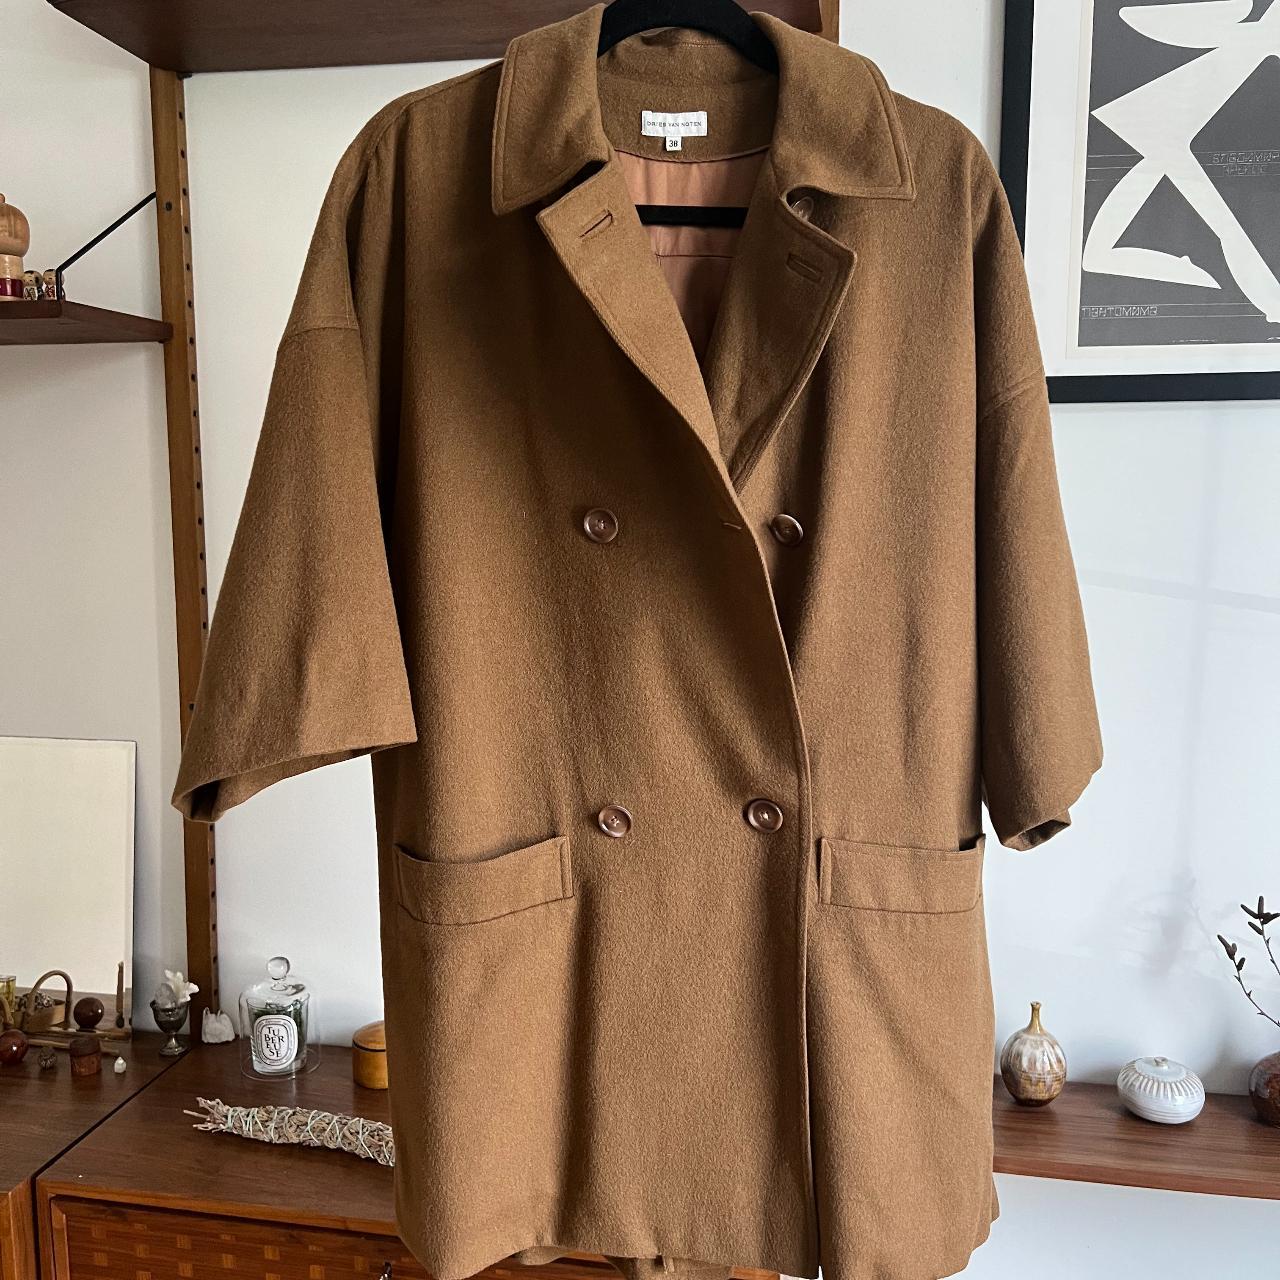 Dries Van Noten Women's Tan and Brown Coat (3)